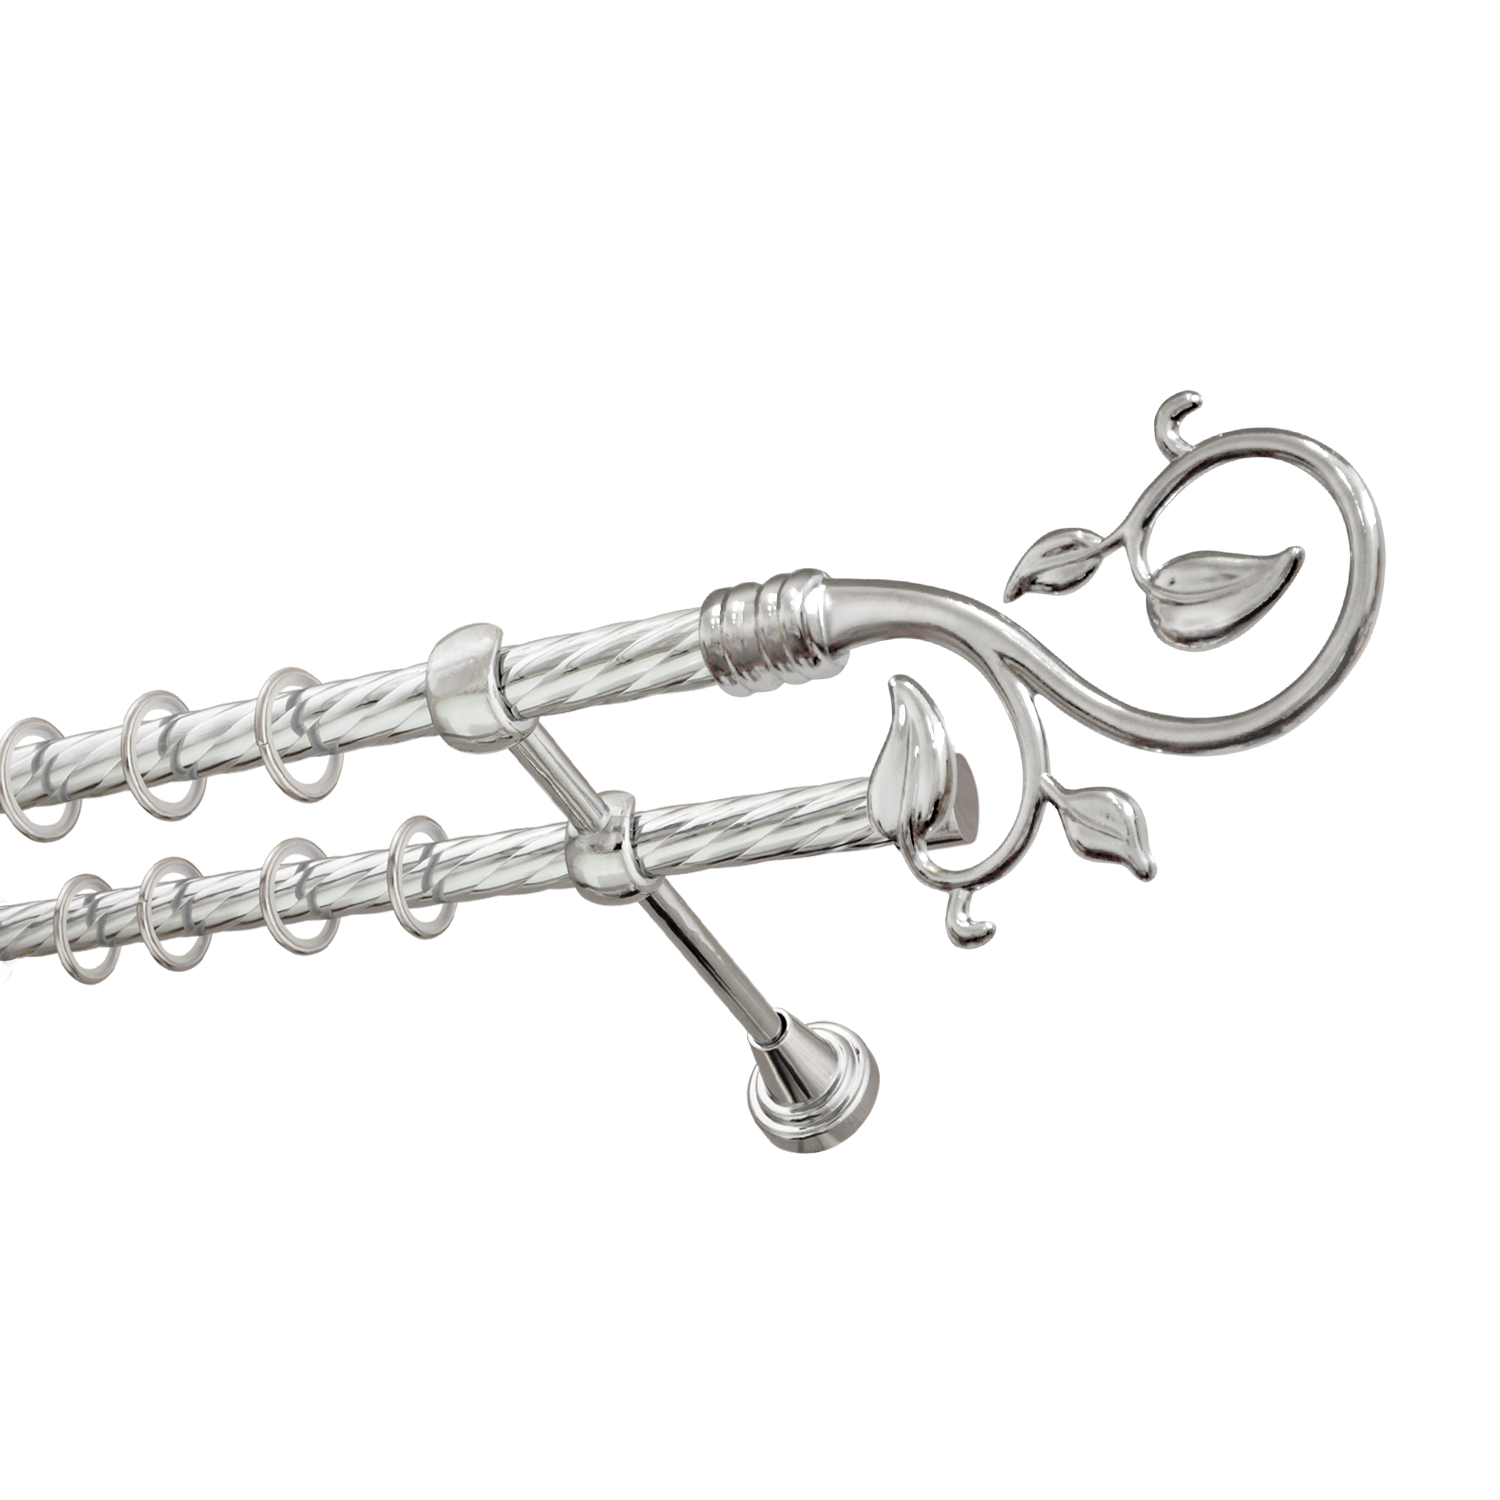 Металлический карниз для штор Амели, двухрядный 16/16 мм, серебро, витая штанга, длина 140 см - фото Wikidecor.ru